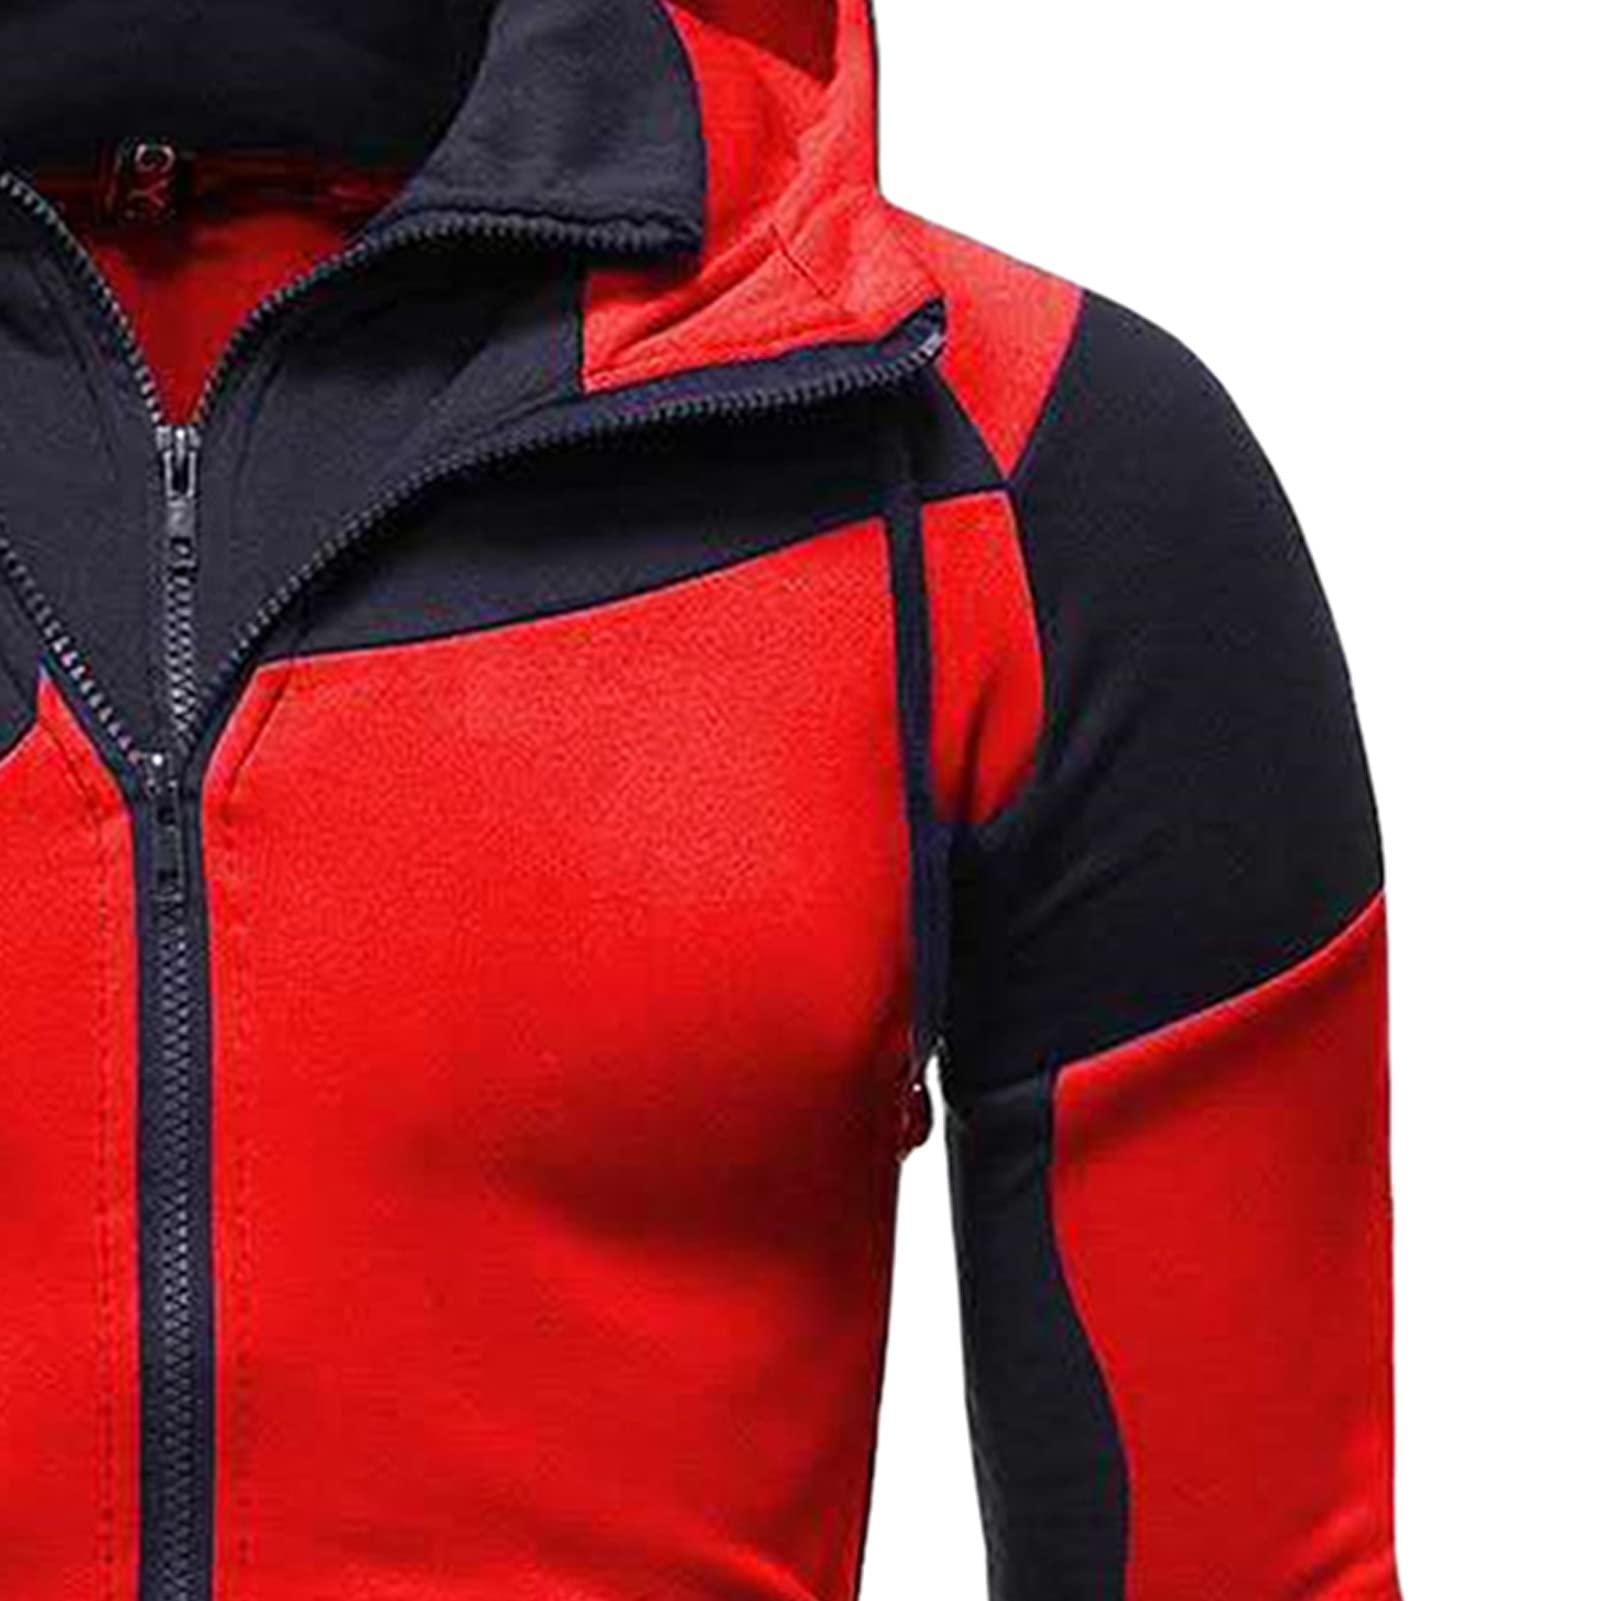 Maiyifu-GJ Men's Slim Fit Zip Up Hoodie Zipper Fleece Color Block Hooded Sweatshirts Long Sleeve Lightweight Hoodies Jacket (Red,Medium)